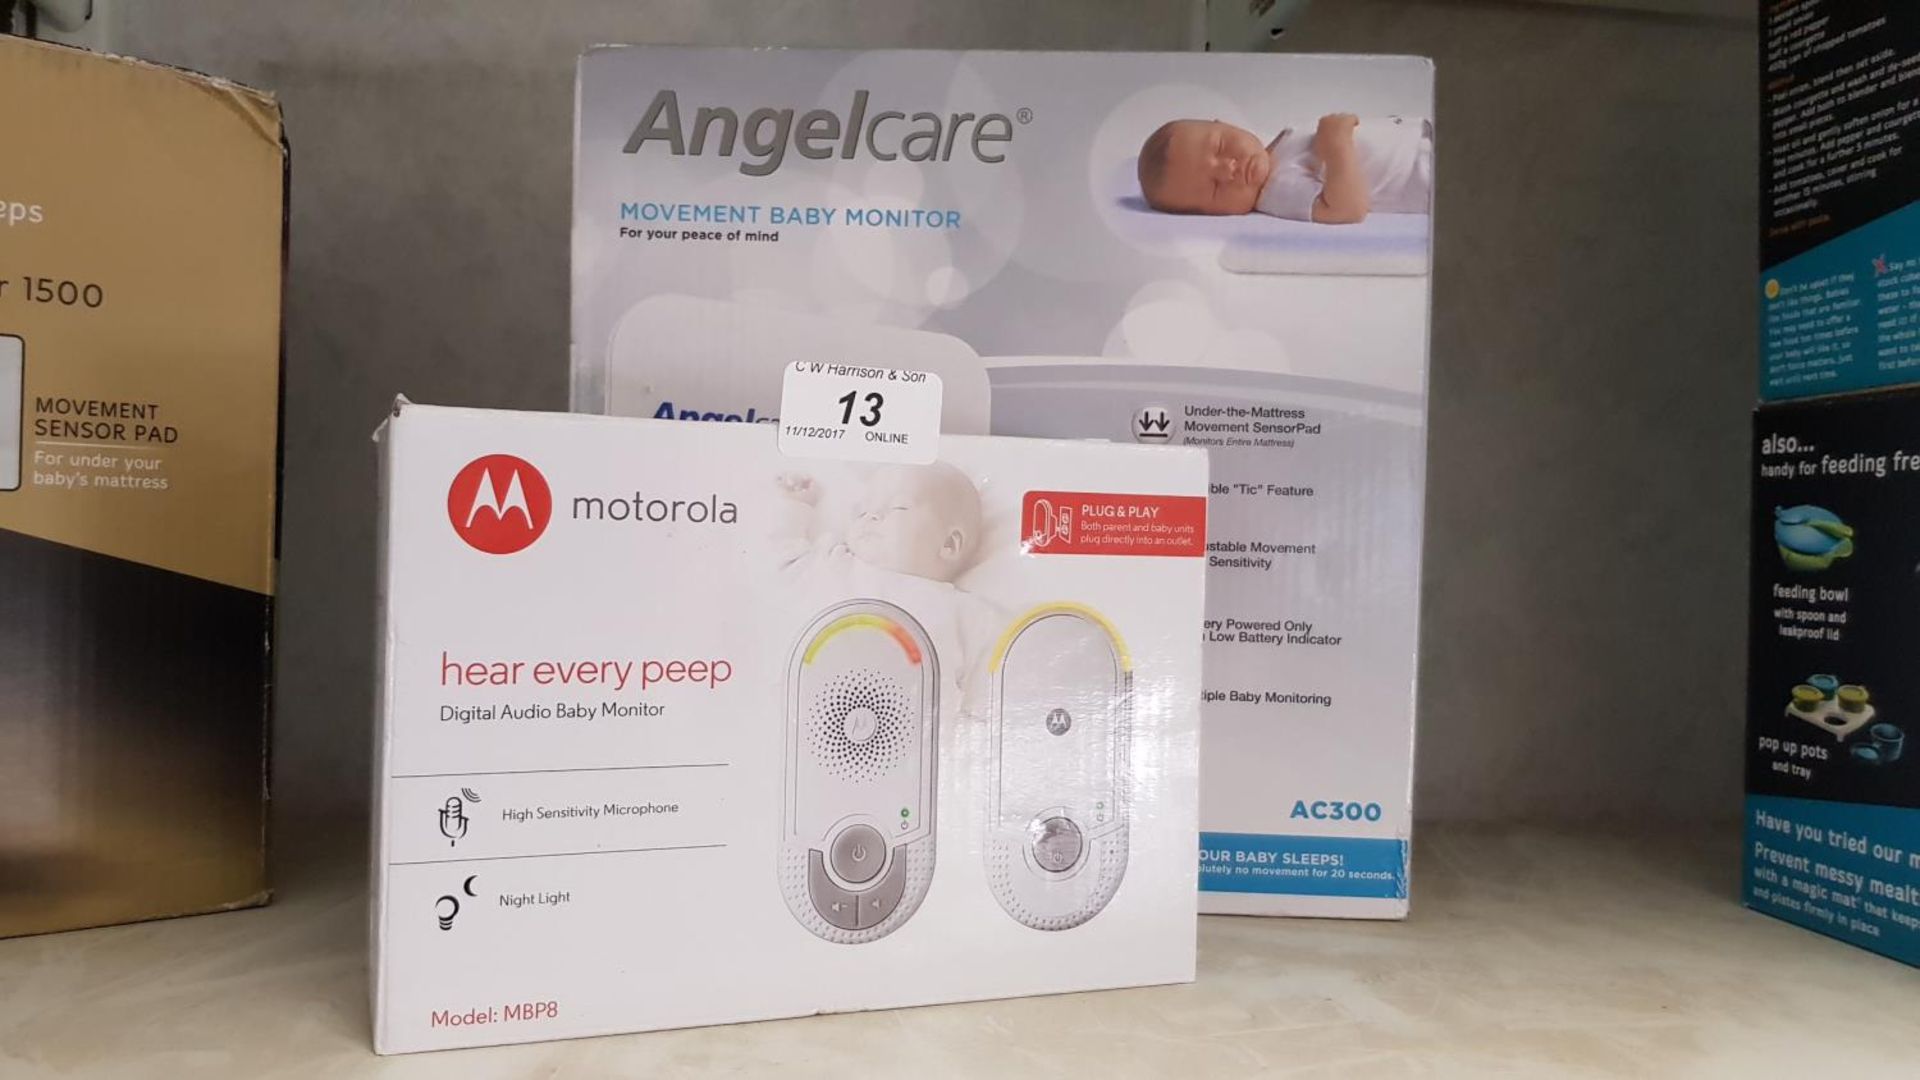 Angelcare baby monitor & Motorola digita